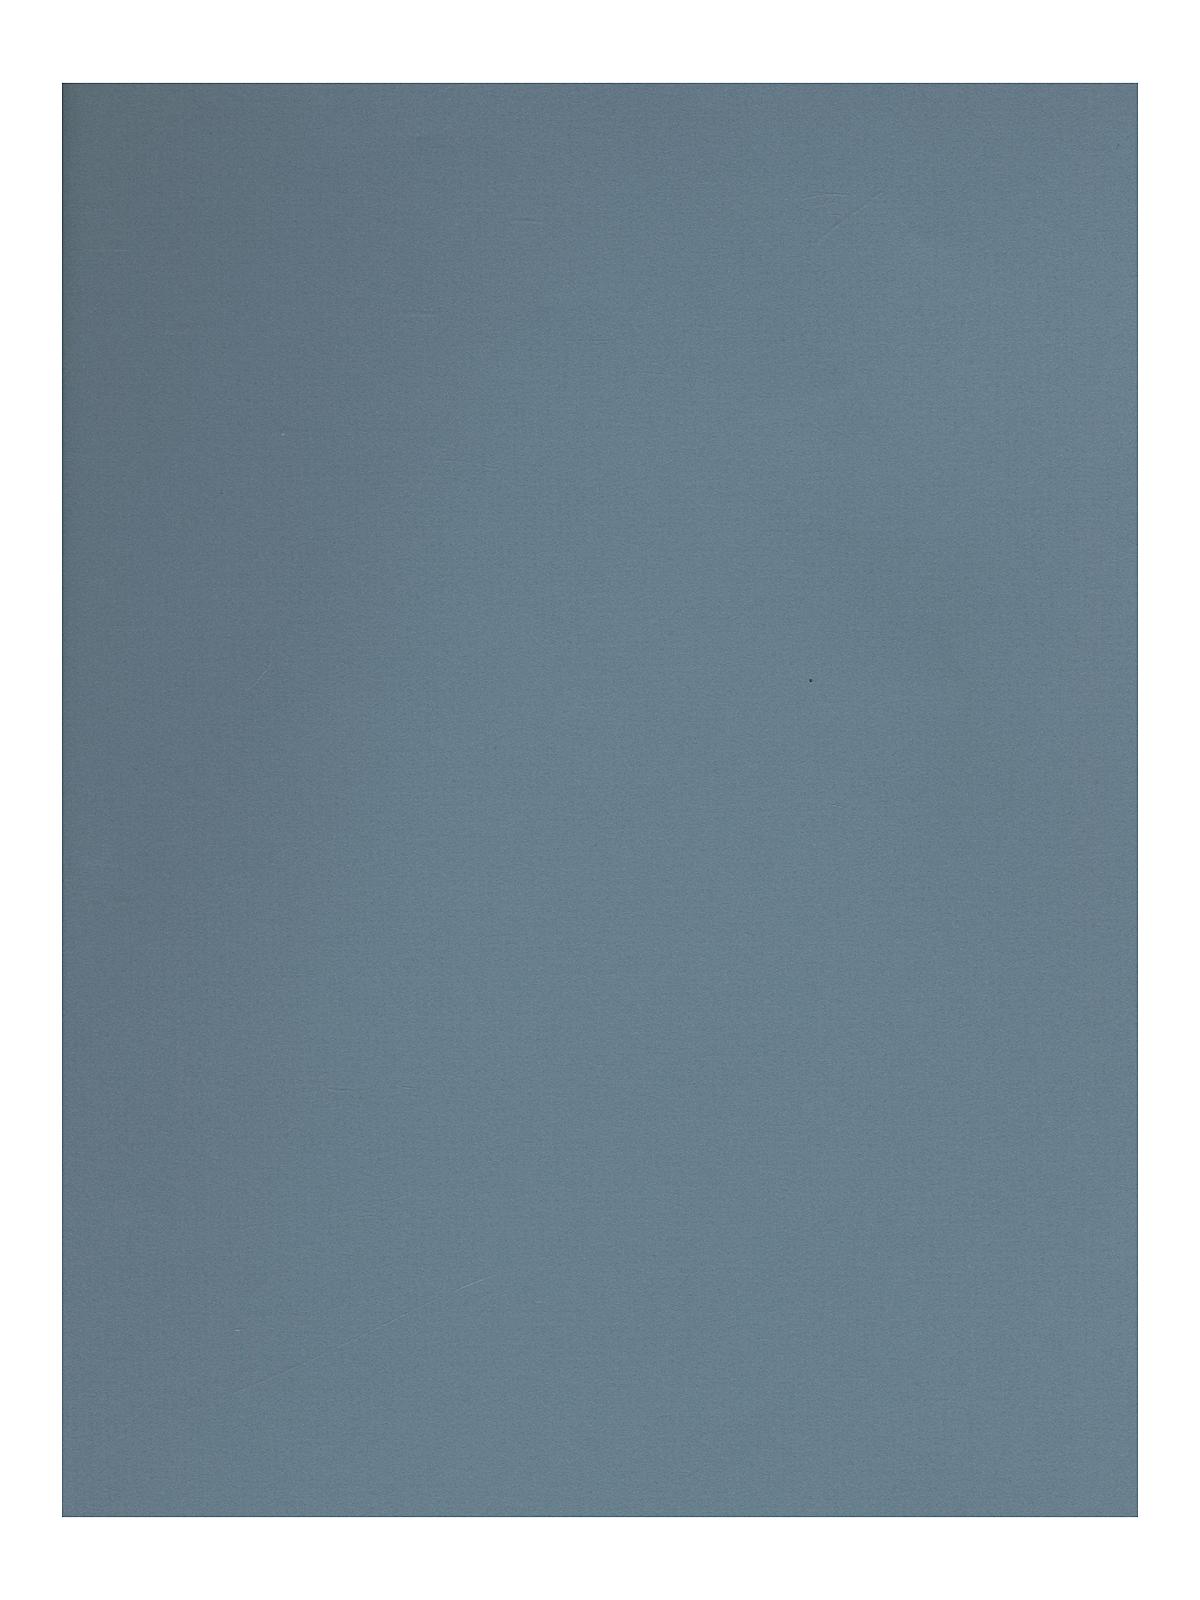 Charcoal Paper Cadet Blue